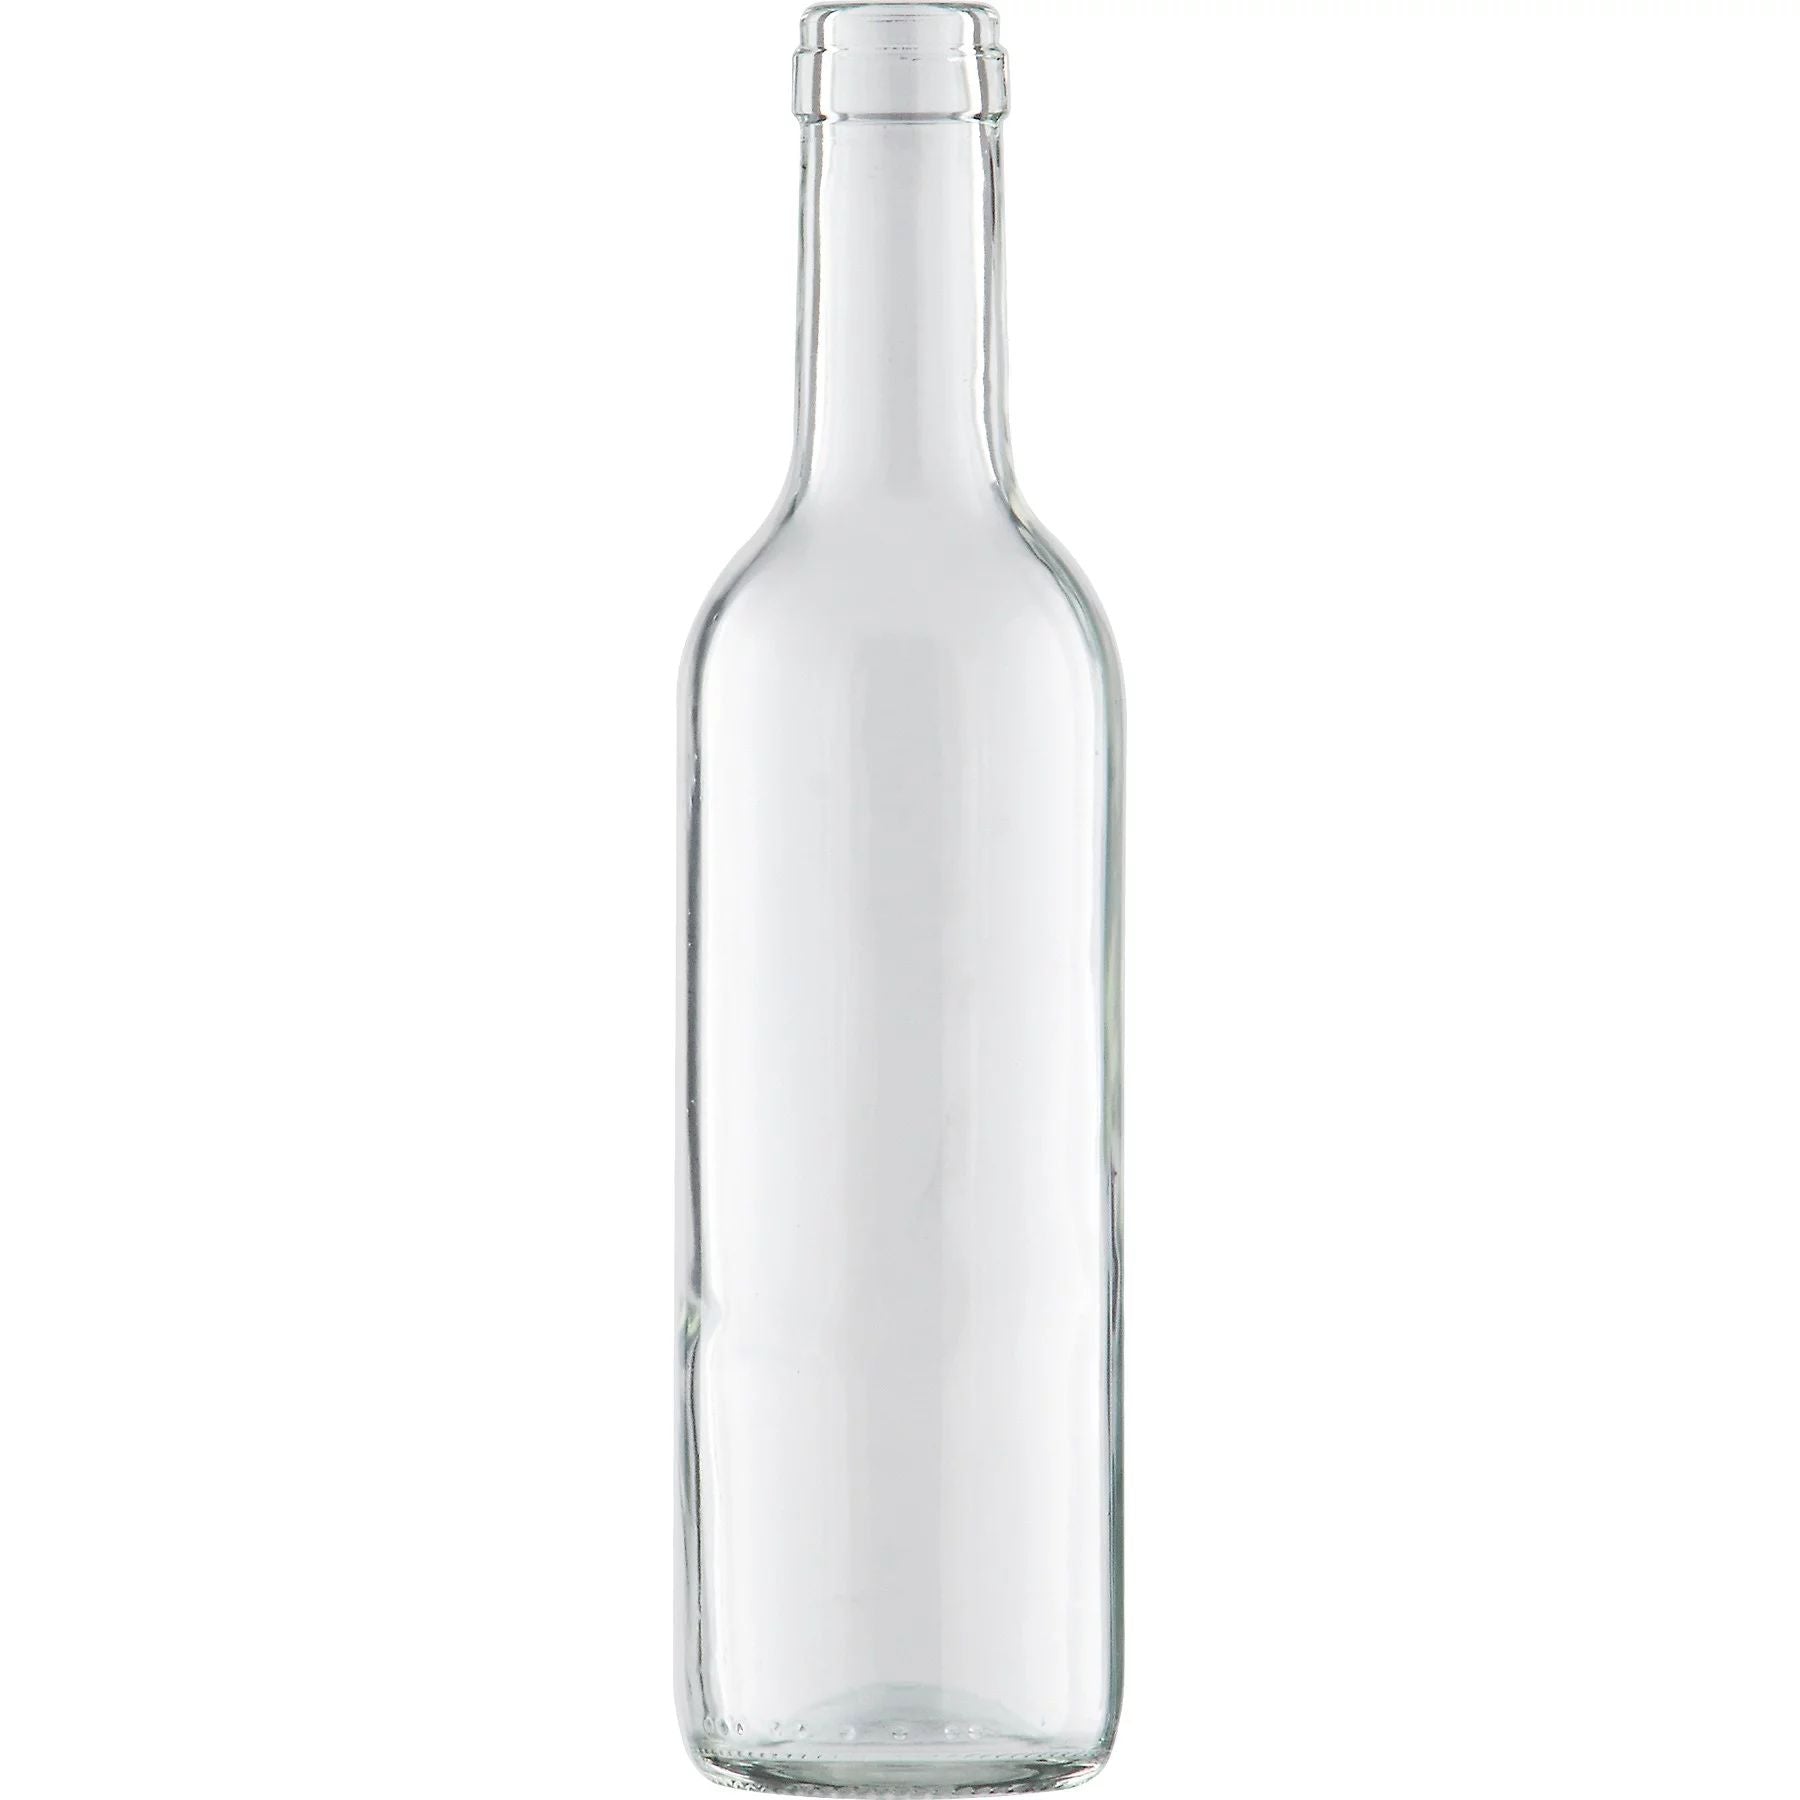 Bordeaux Wine Bottles - 375 ml, Clear - Case of 12